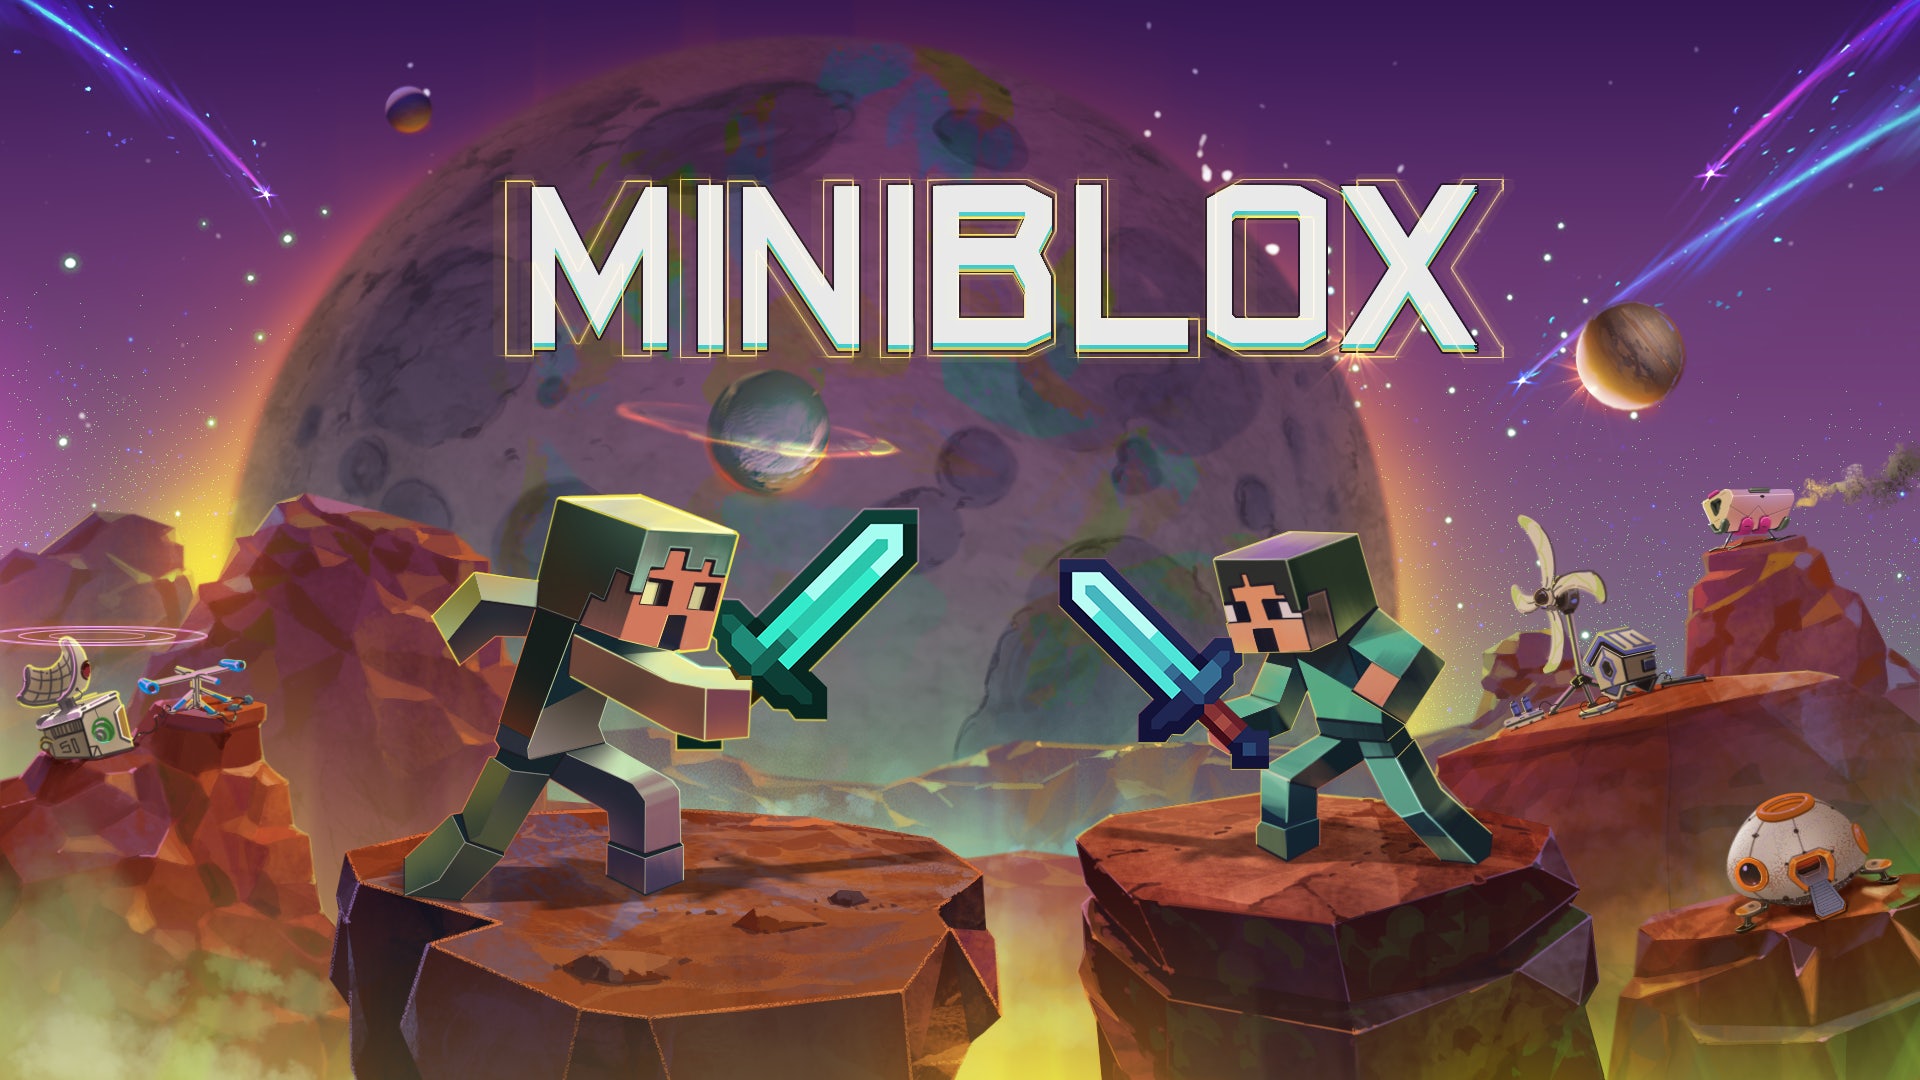 Miniblox